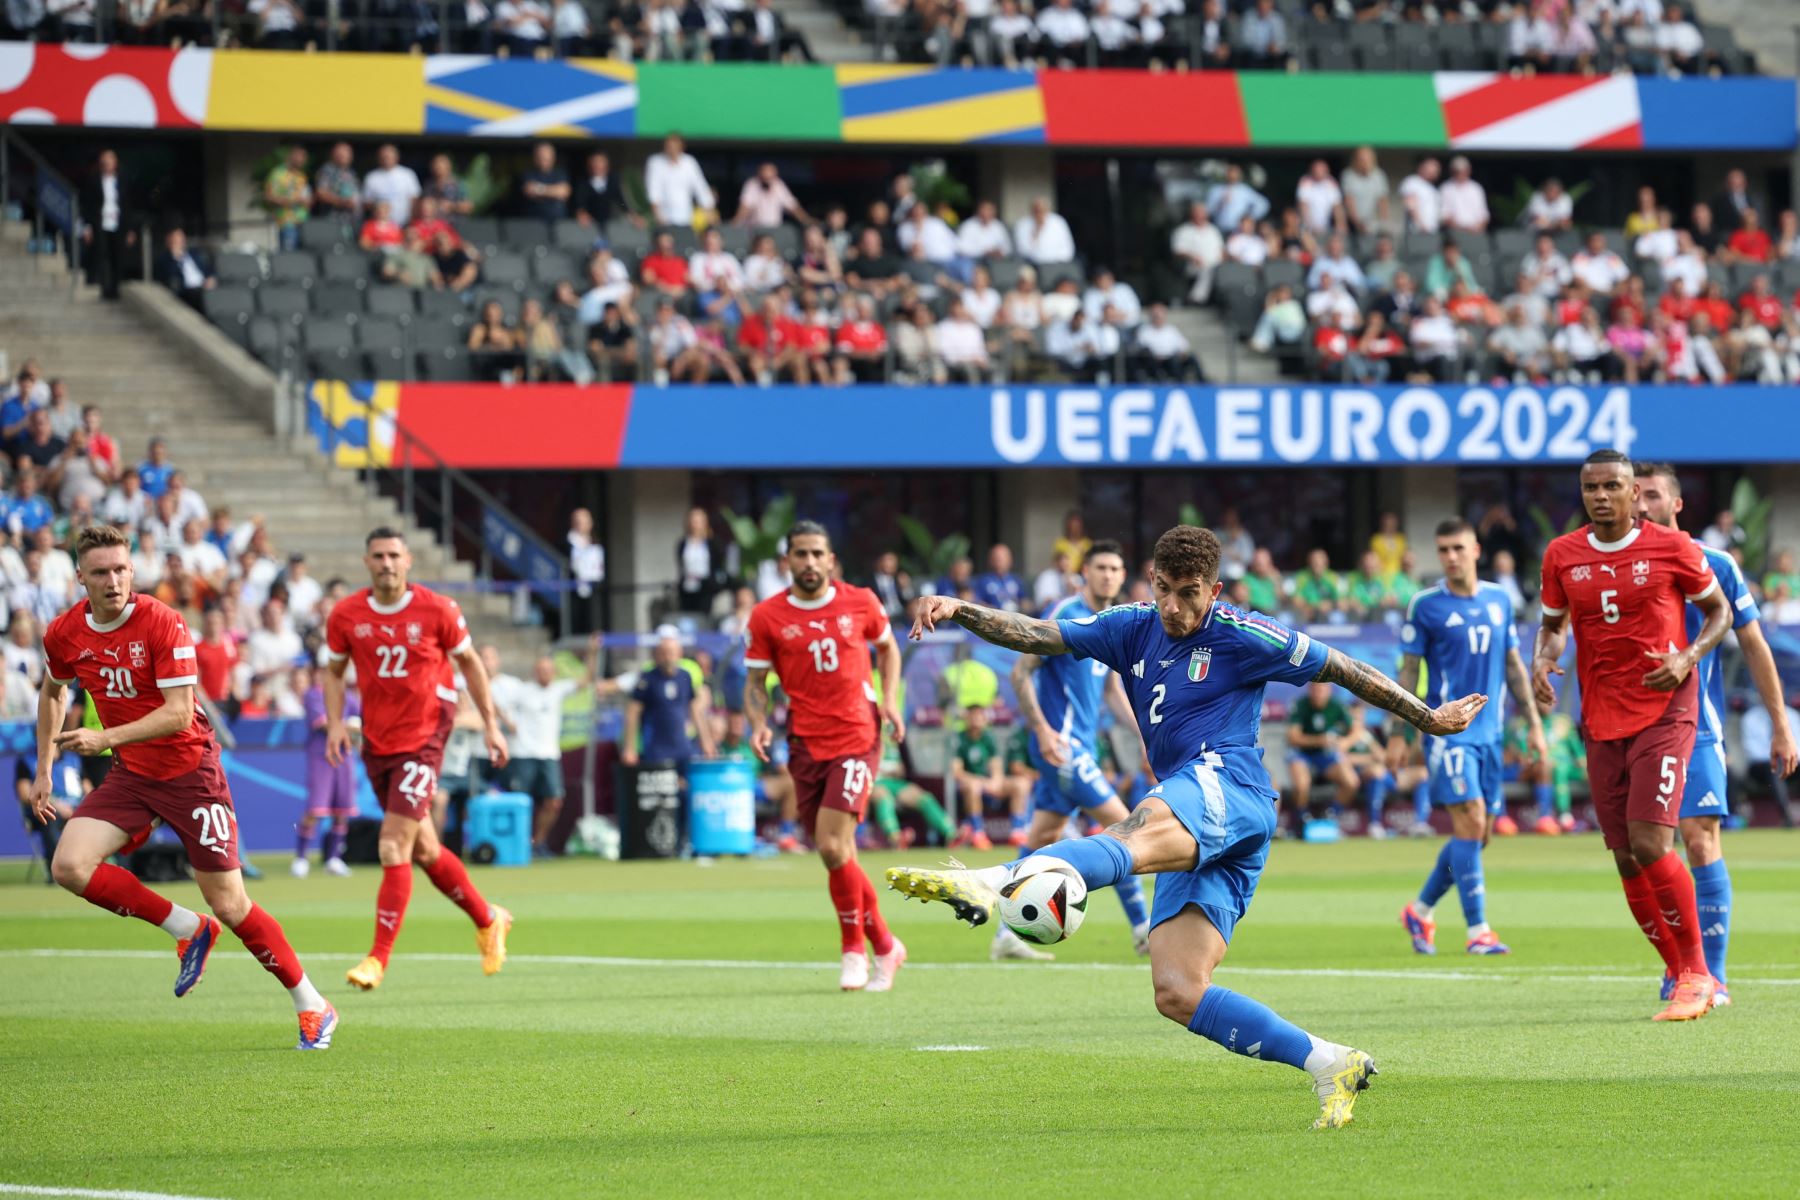 El defensor italiano  Giovanni Di Lorenzo patea el balón durante el partido de fútbol de octavos de final de la UEFA Euro 2024 entre Suiza e Italia en el Olympiastadion de Berlín. Foto: AFP